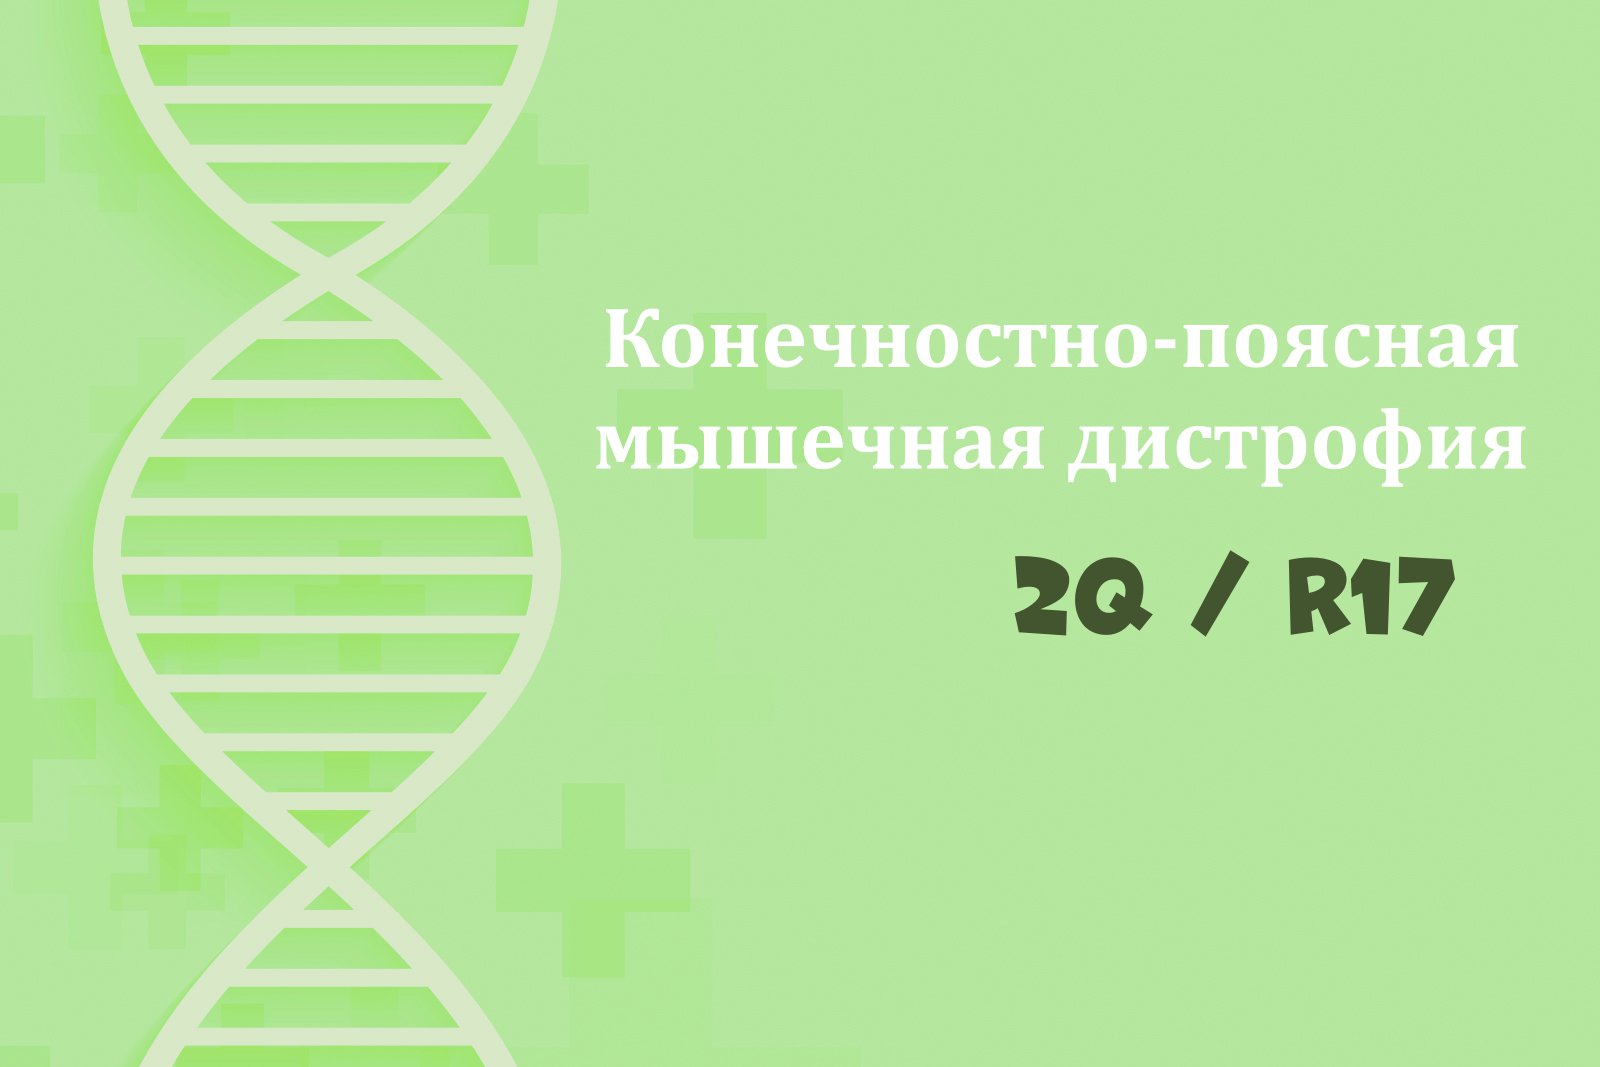 На зелёном фоне схема ДНК и надпись "Конечностно-поясная мышечная дистрофия 2Q / R17"